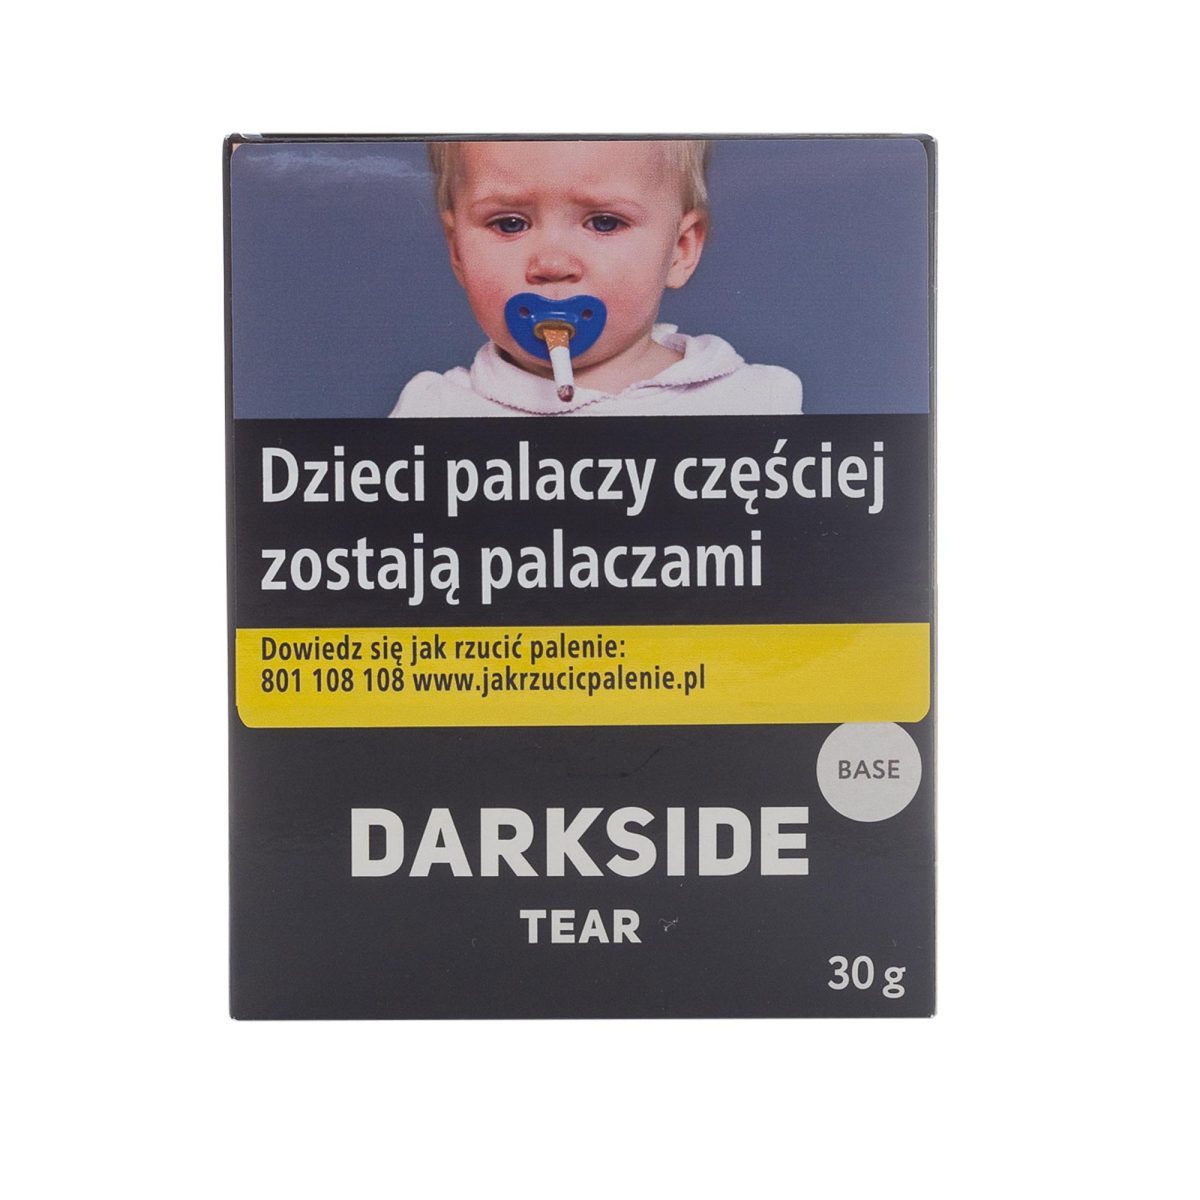 Darkside Base Tear 30g